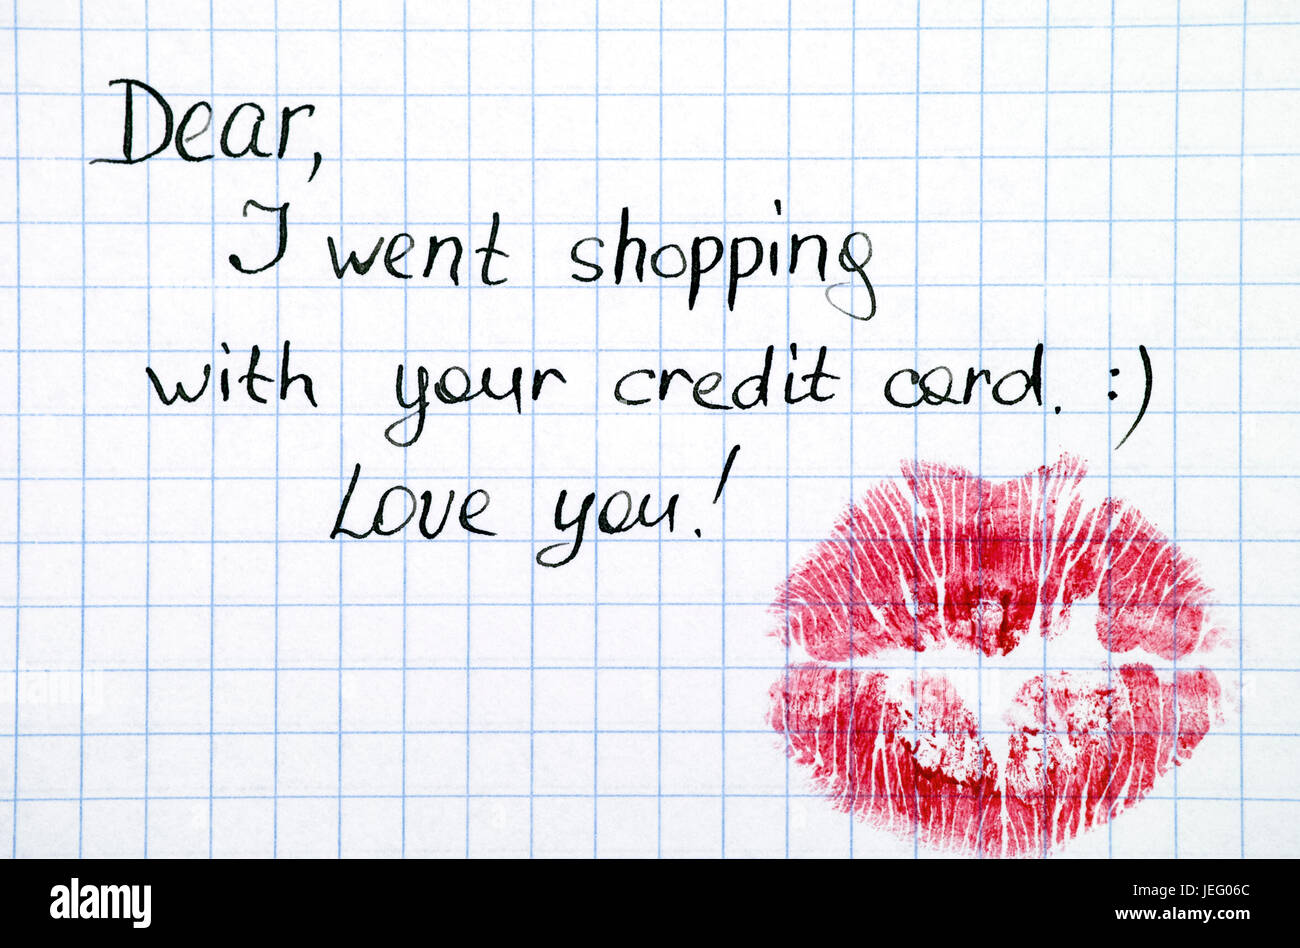 Nota - cari, sono andato a fare shopping con la tua carta di credito. Ti amo! Con il bacio. Foto Stock